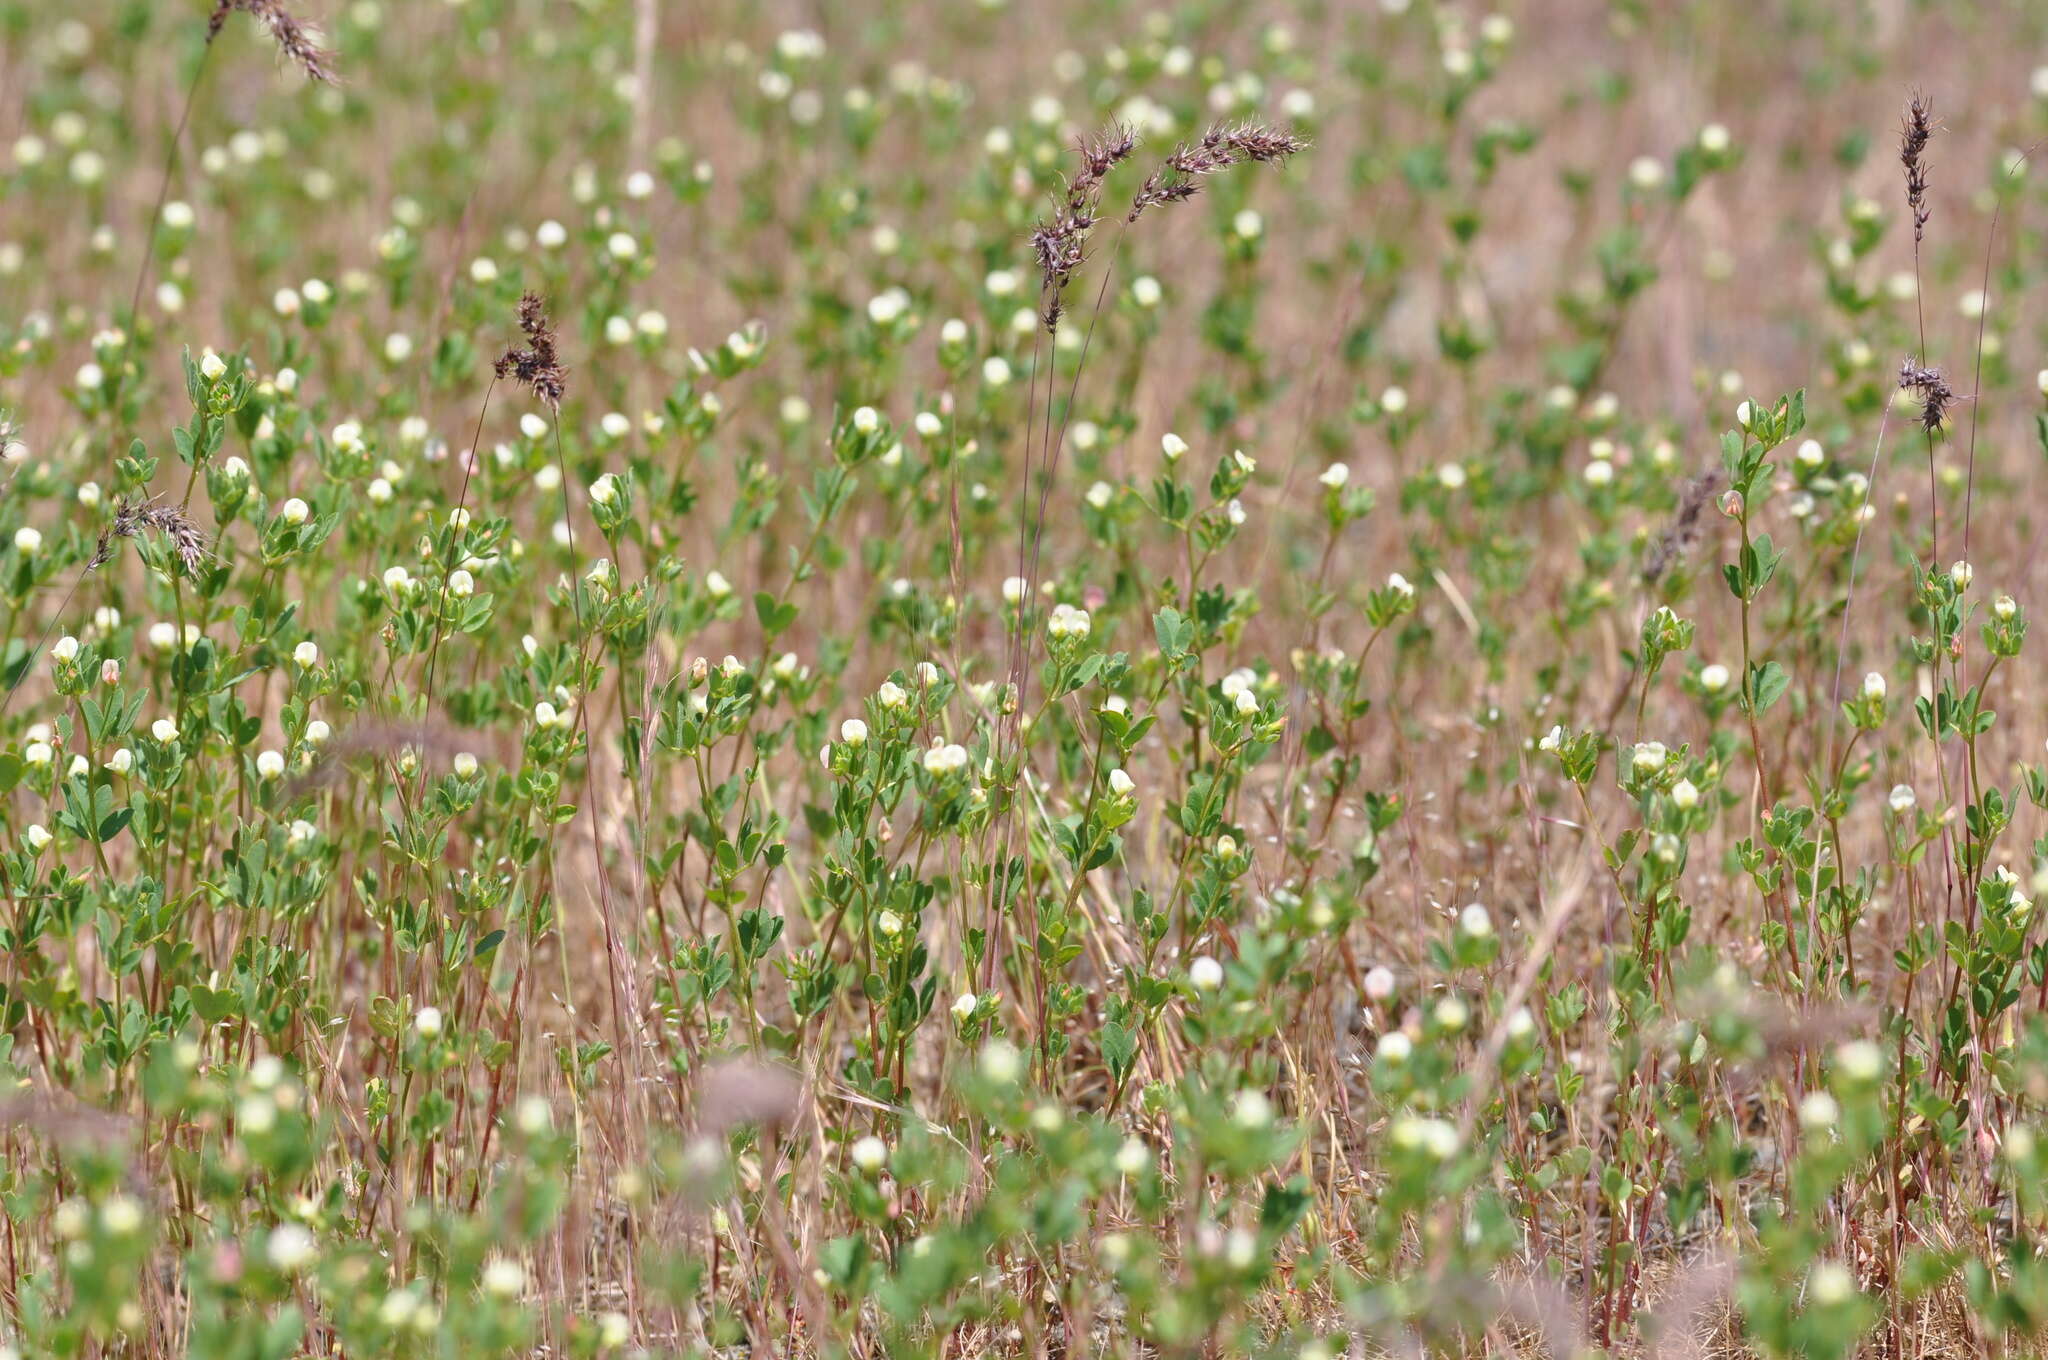 Image of American Deerweed